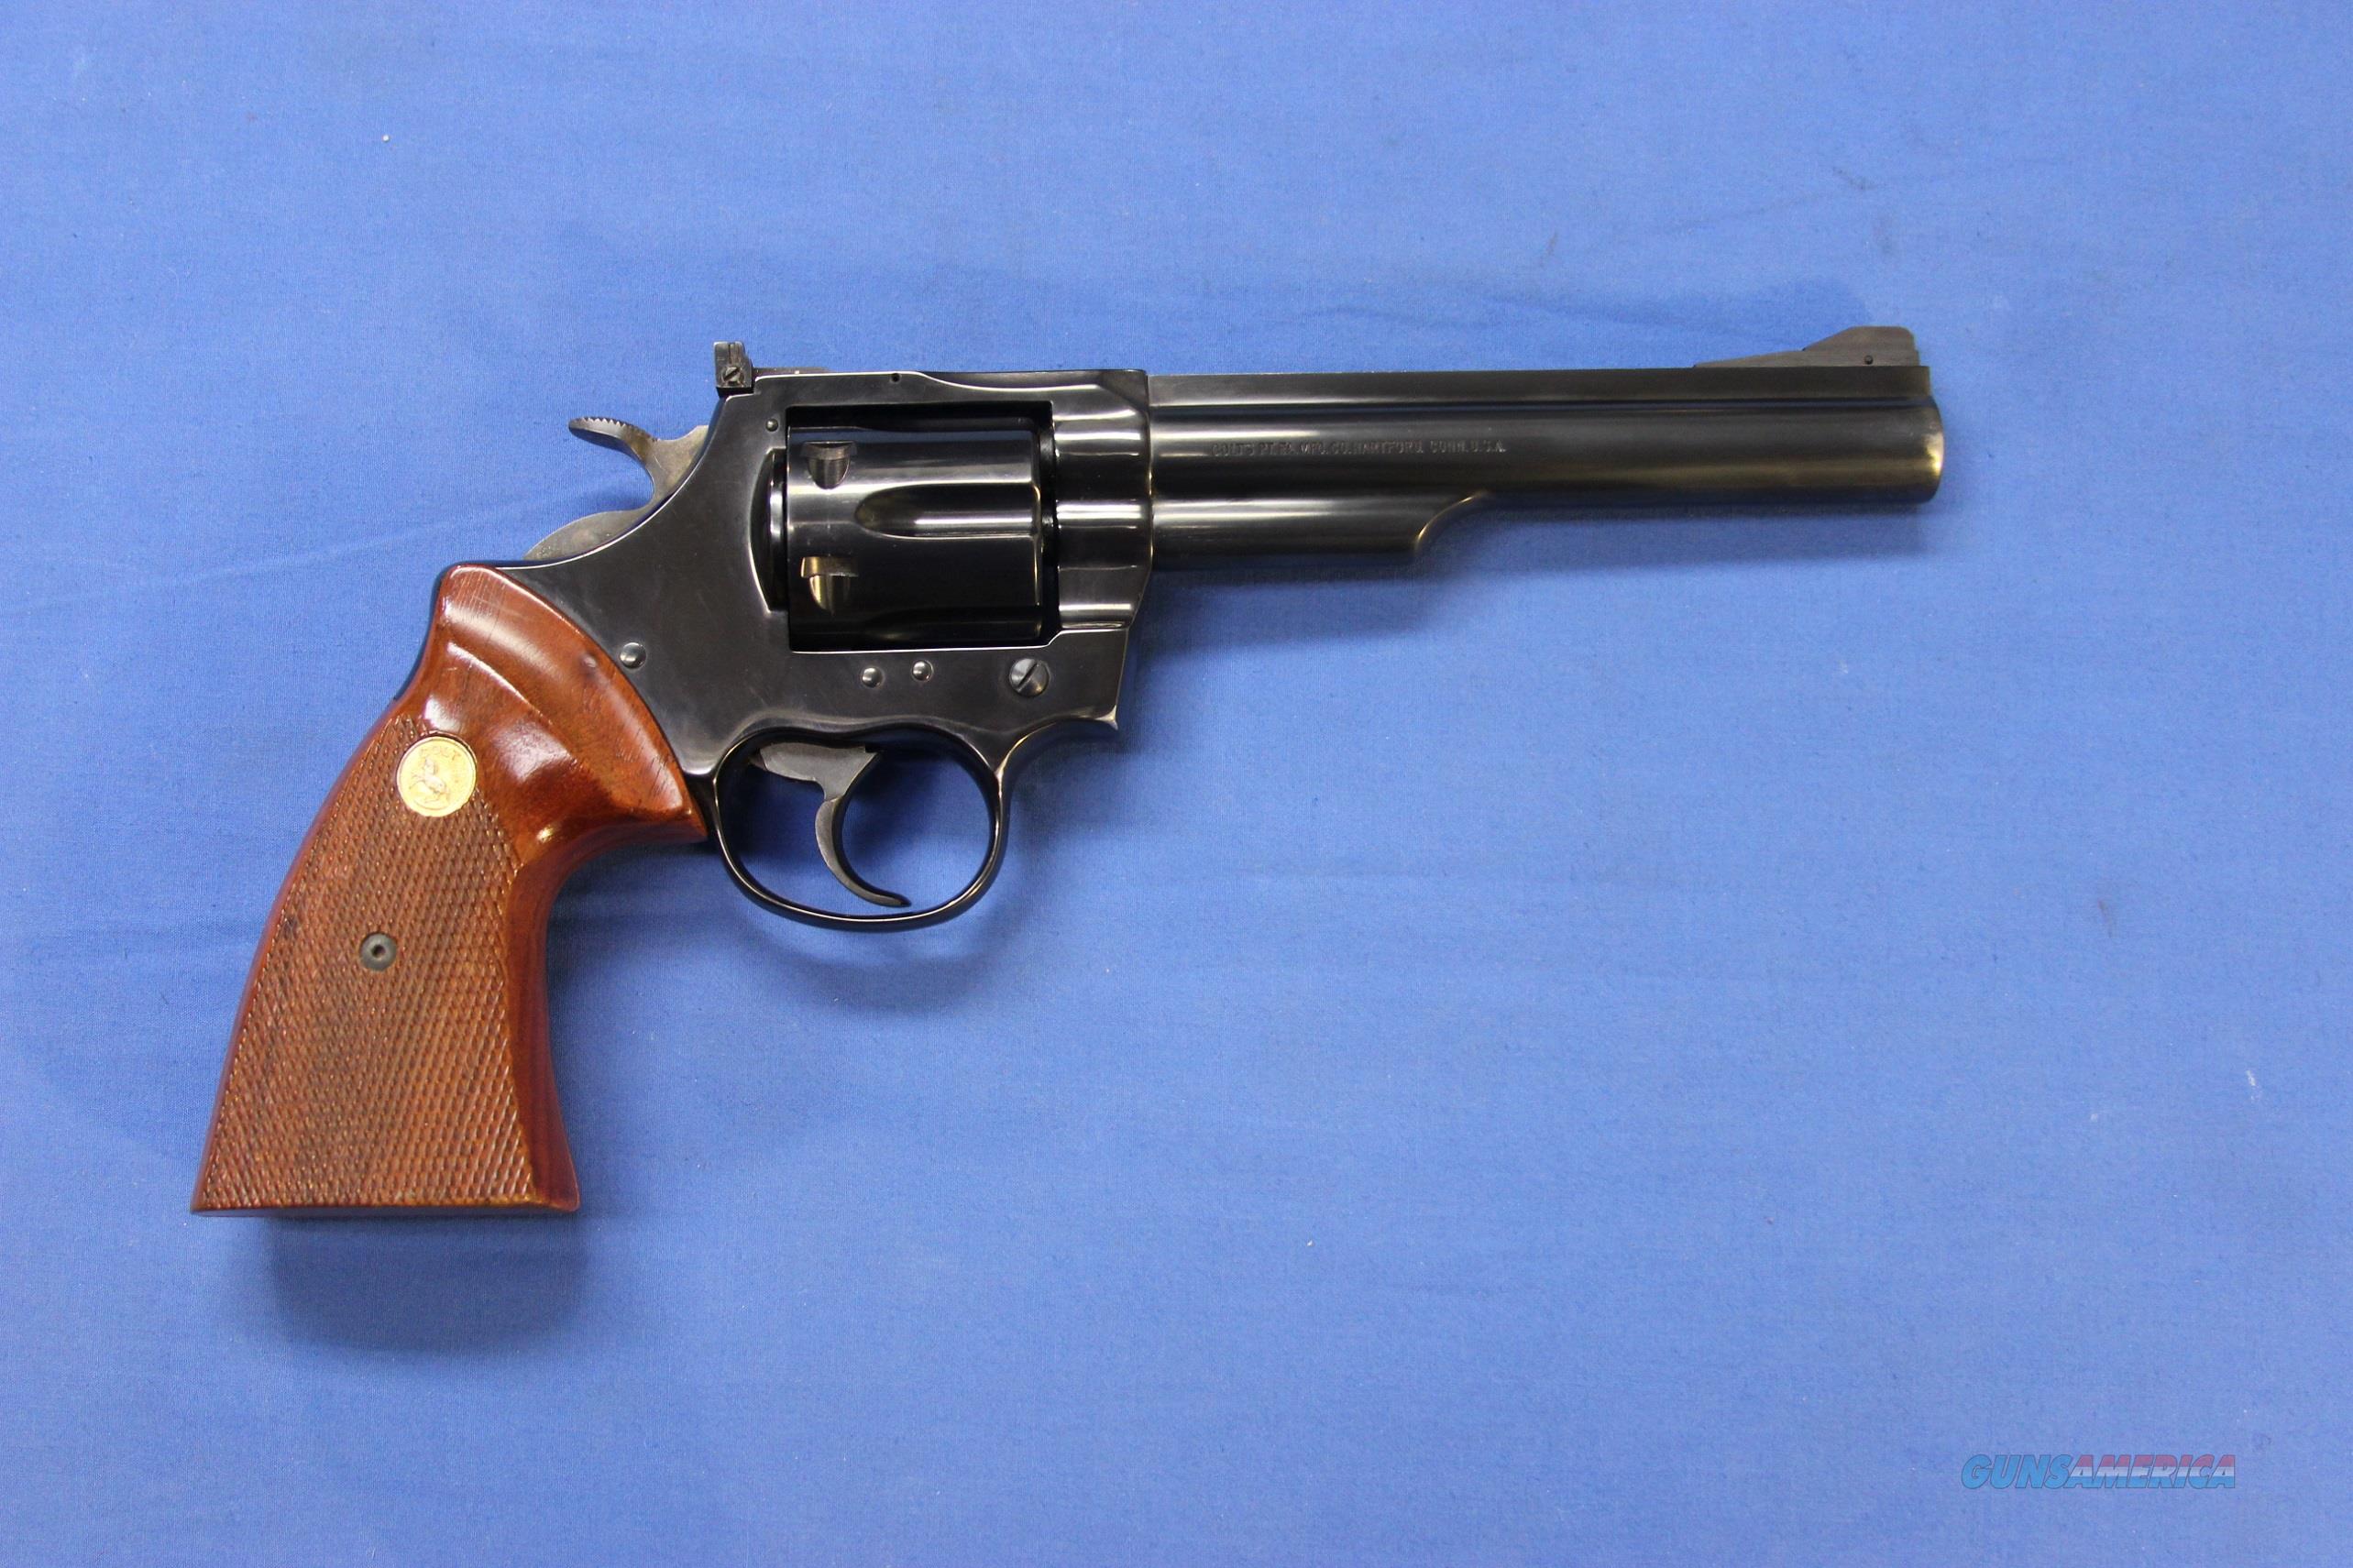 Colt Trooper Mk Iii 357 Magnum 6 For Sale At 968264517 2760